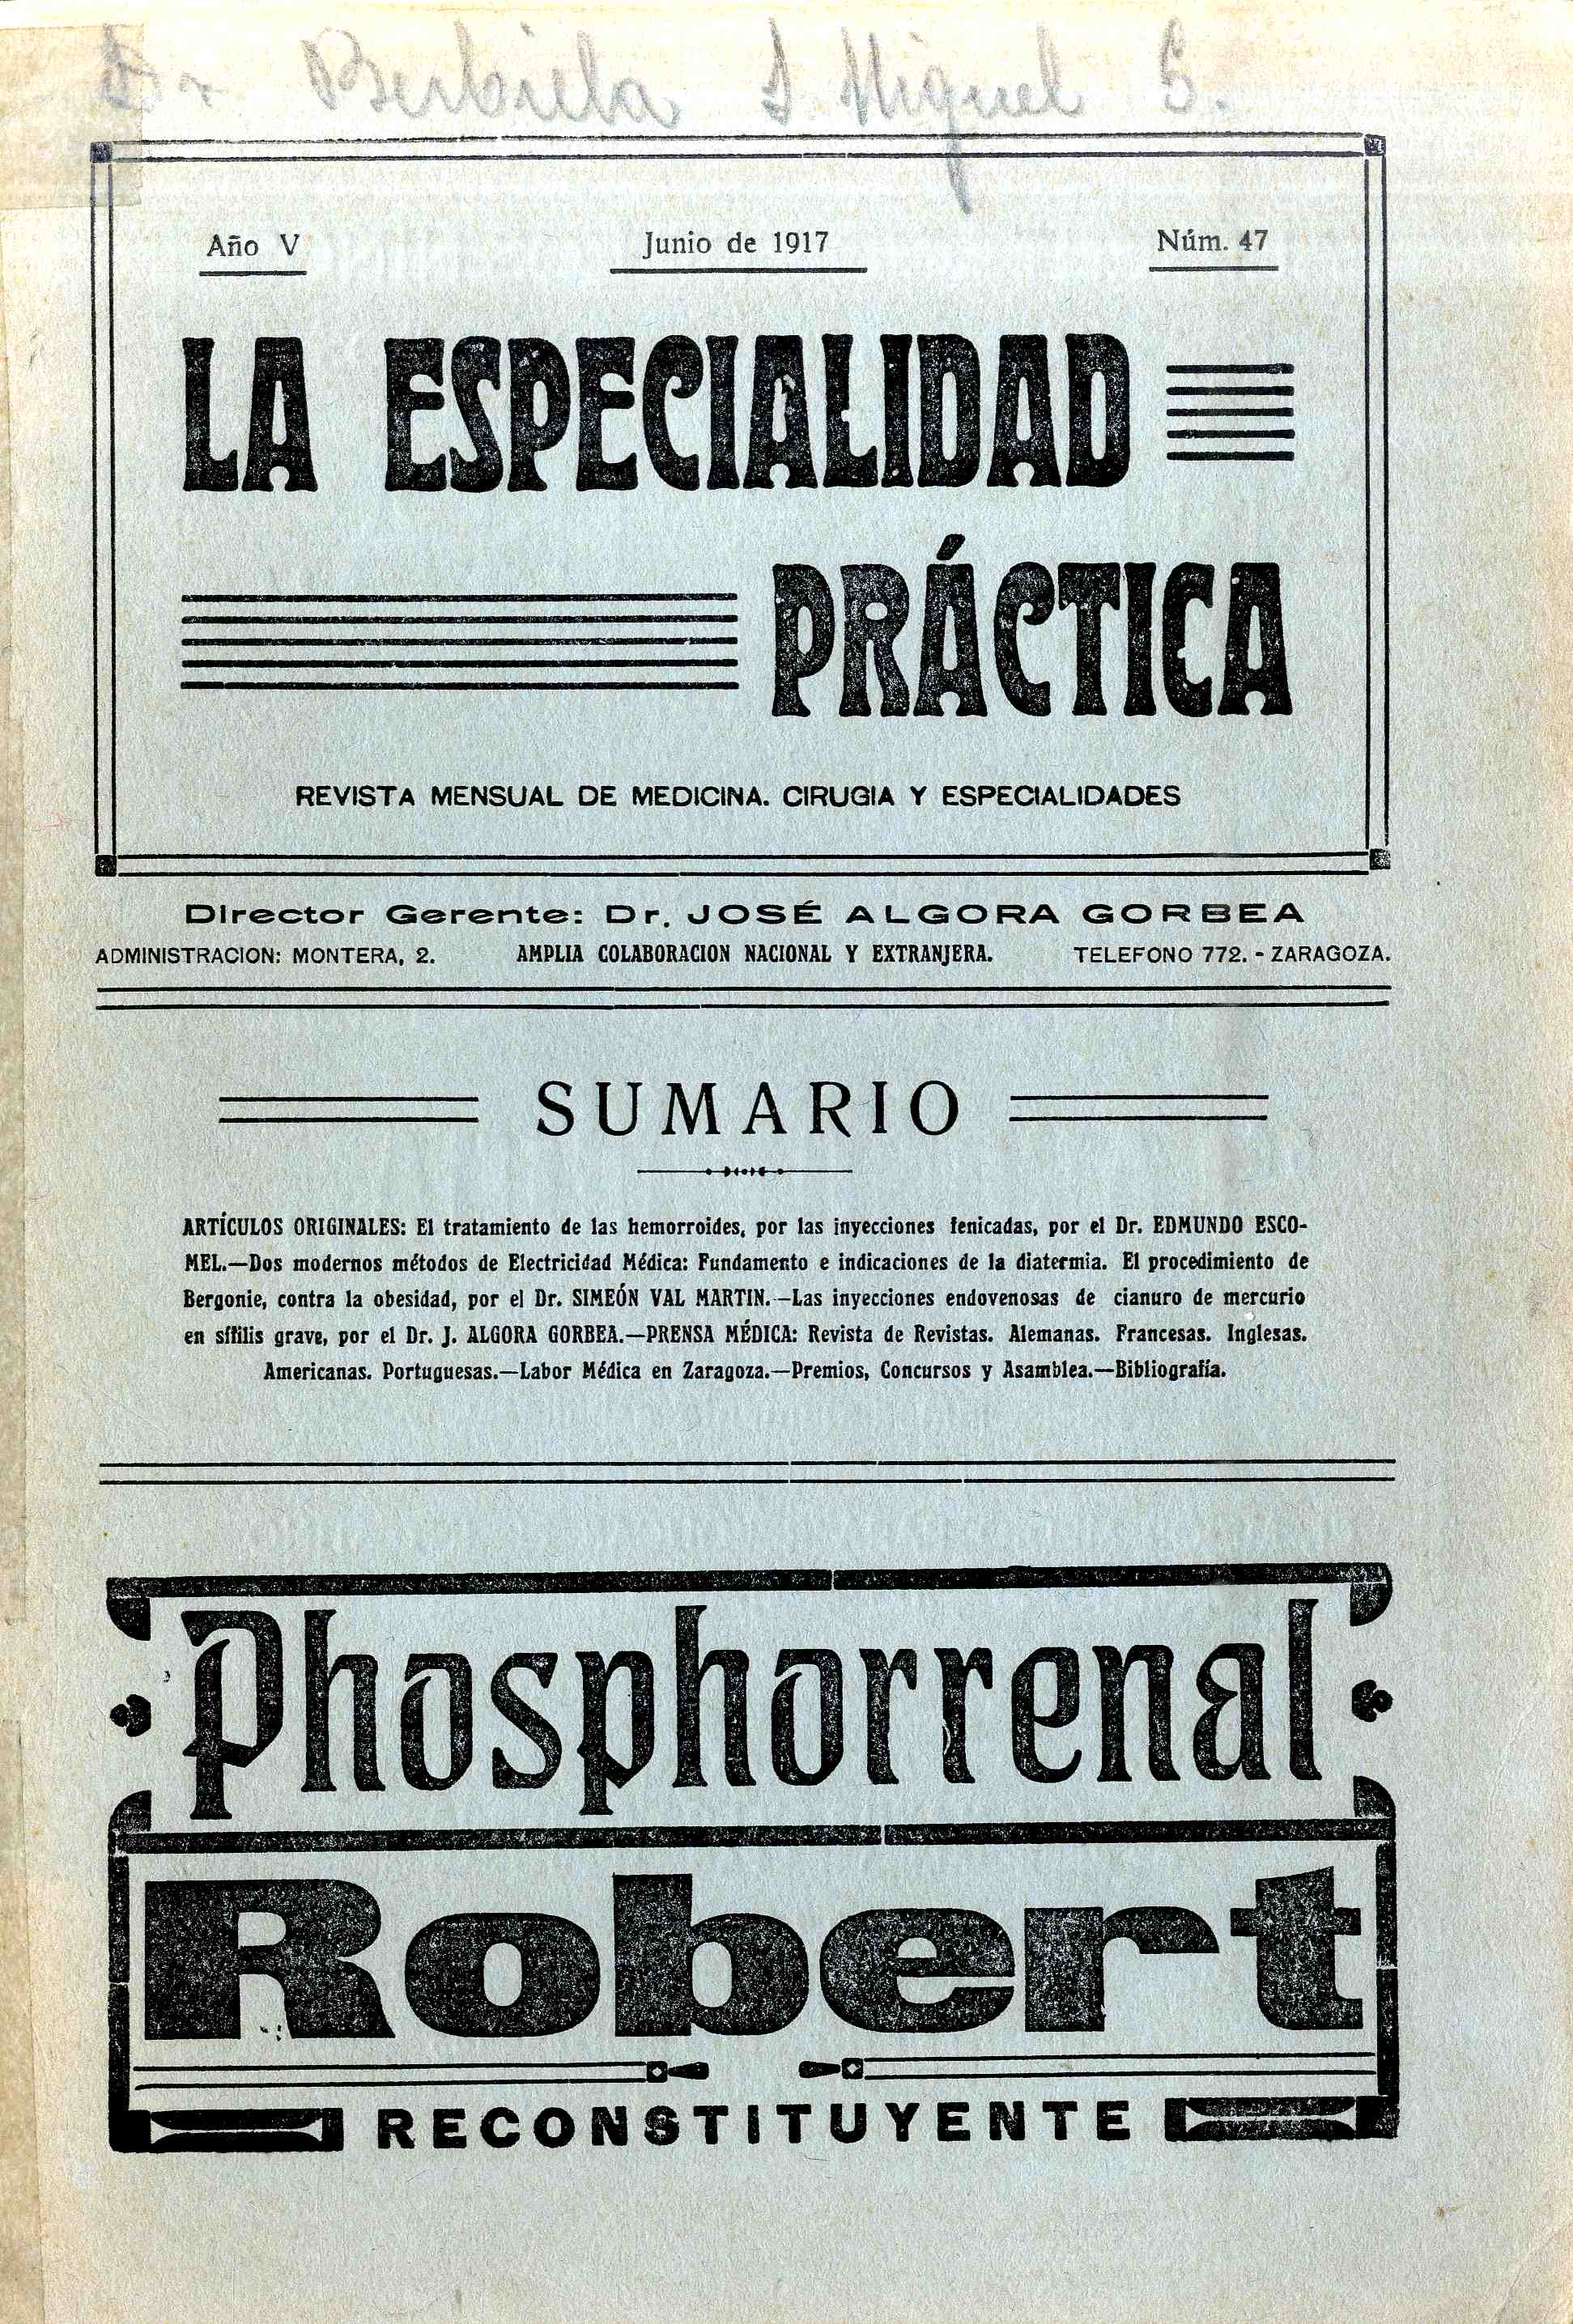 La Especialidad Práctica. Revista mensual de medicina, cirugía y especialidades, Año 5, n. 47 (1917)